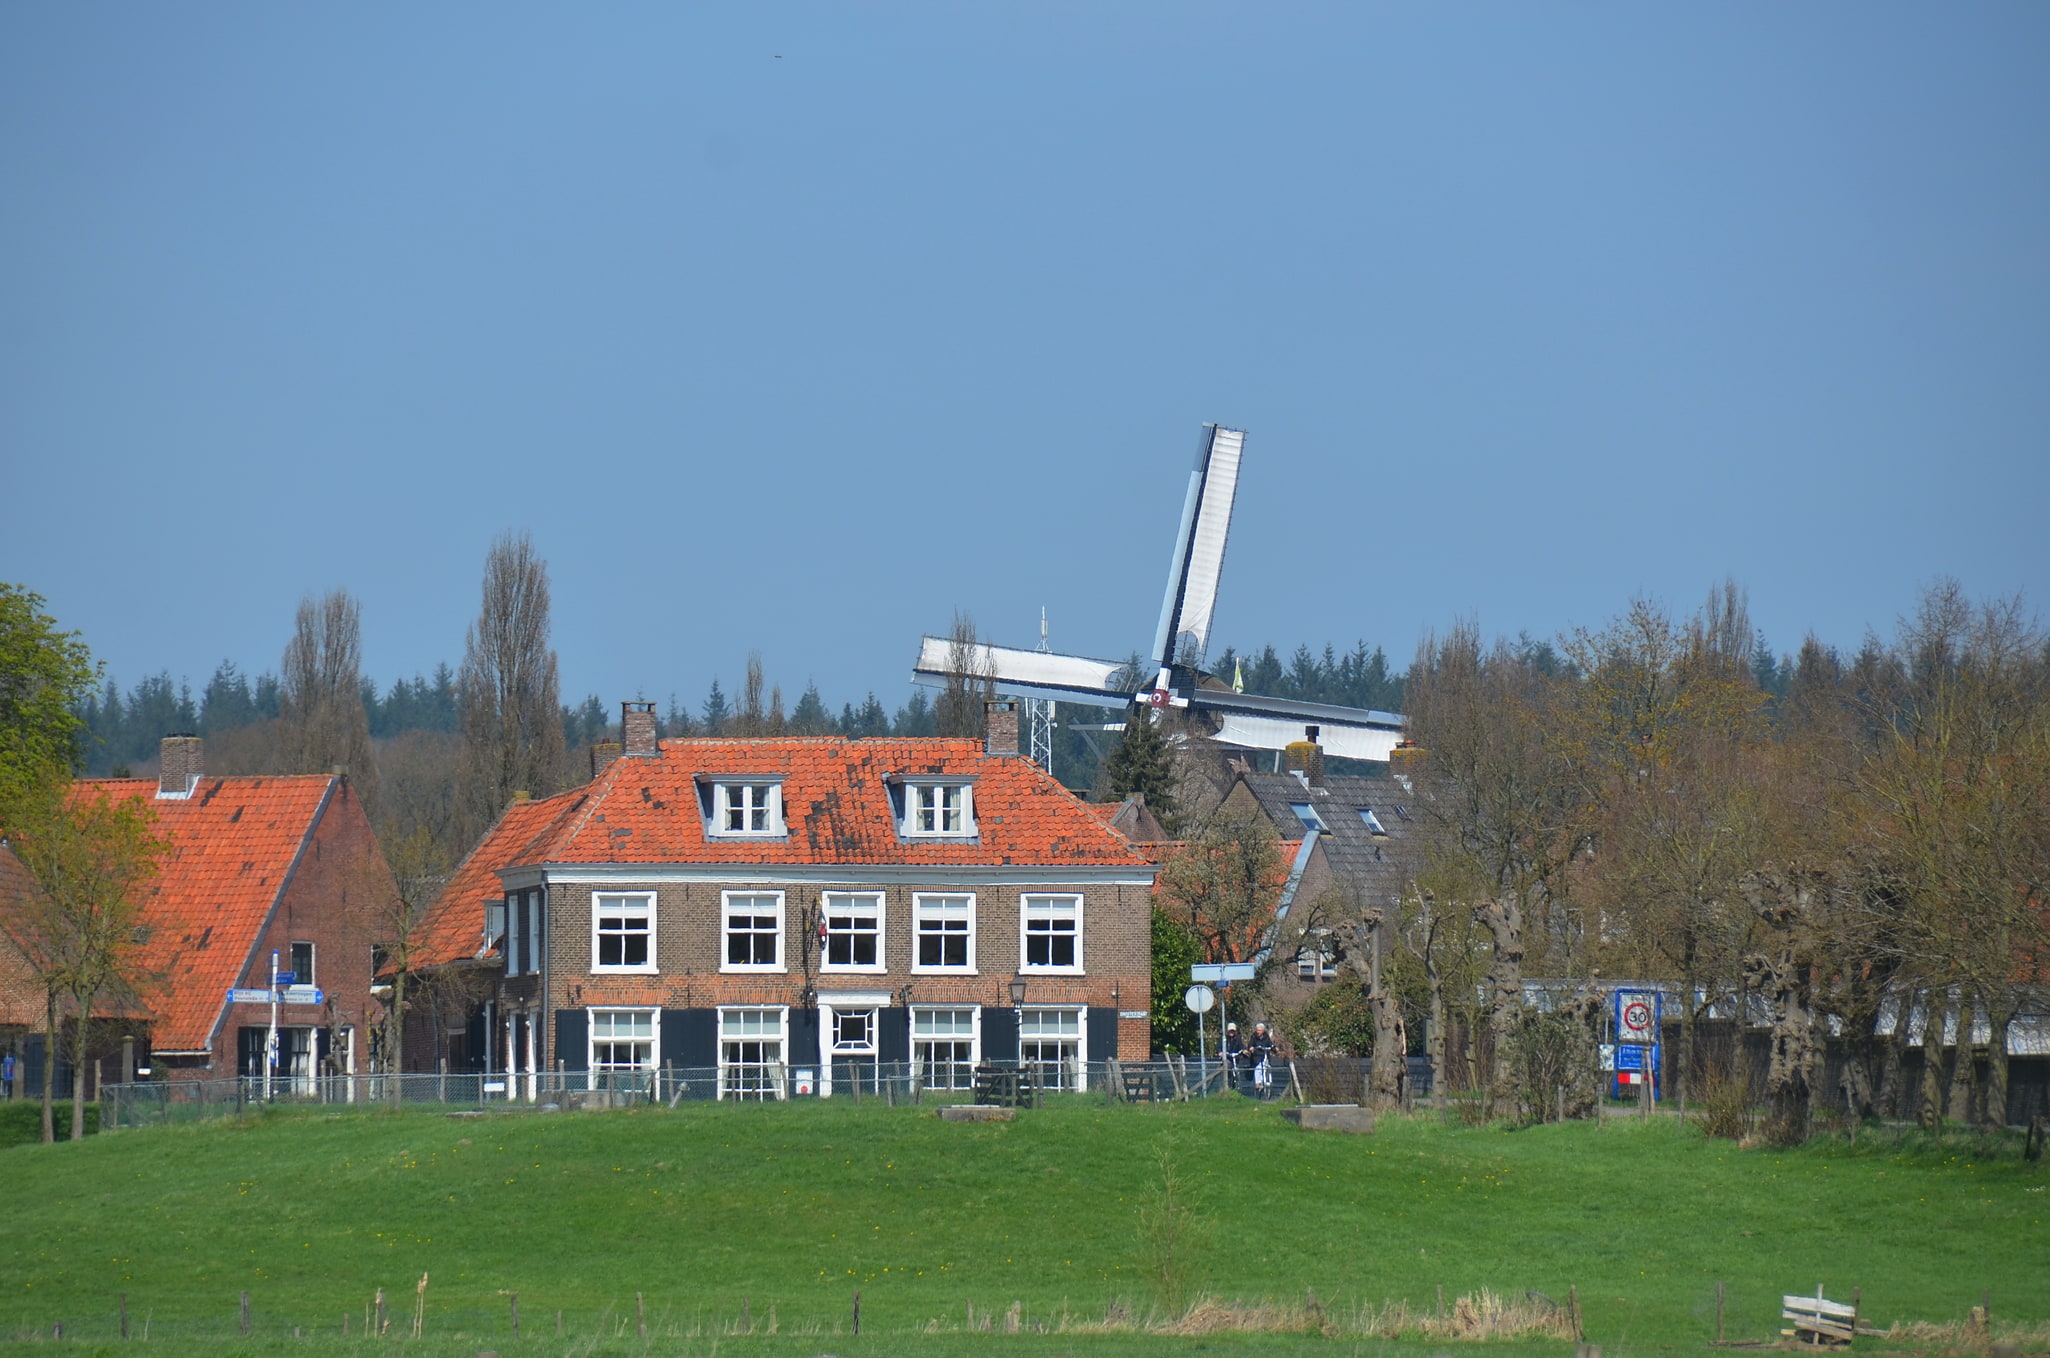 Amerongen, Netherlands